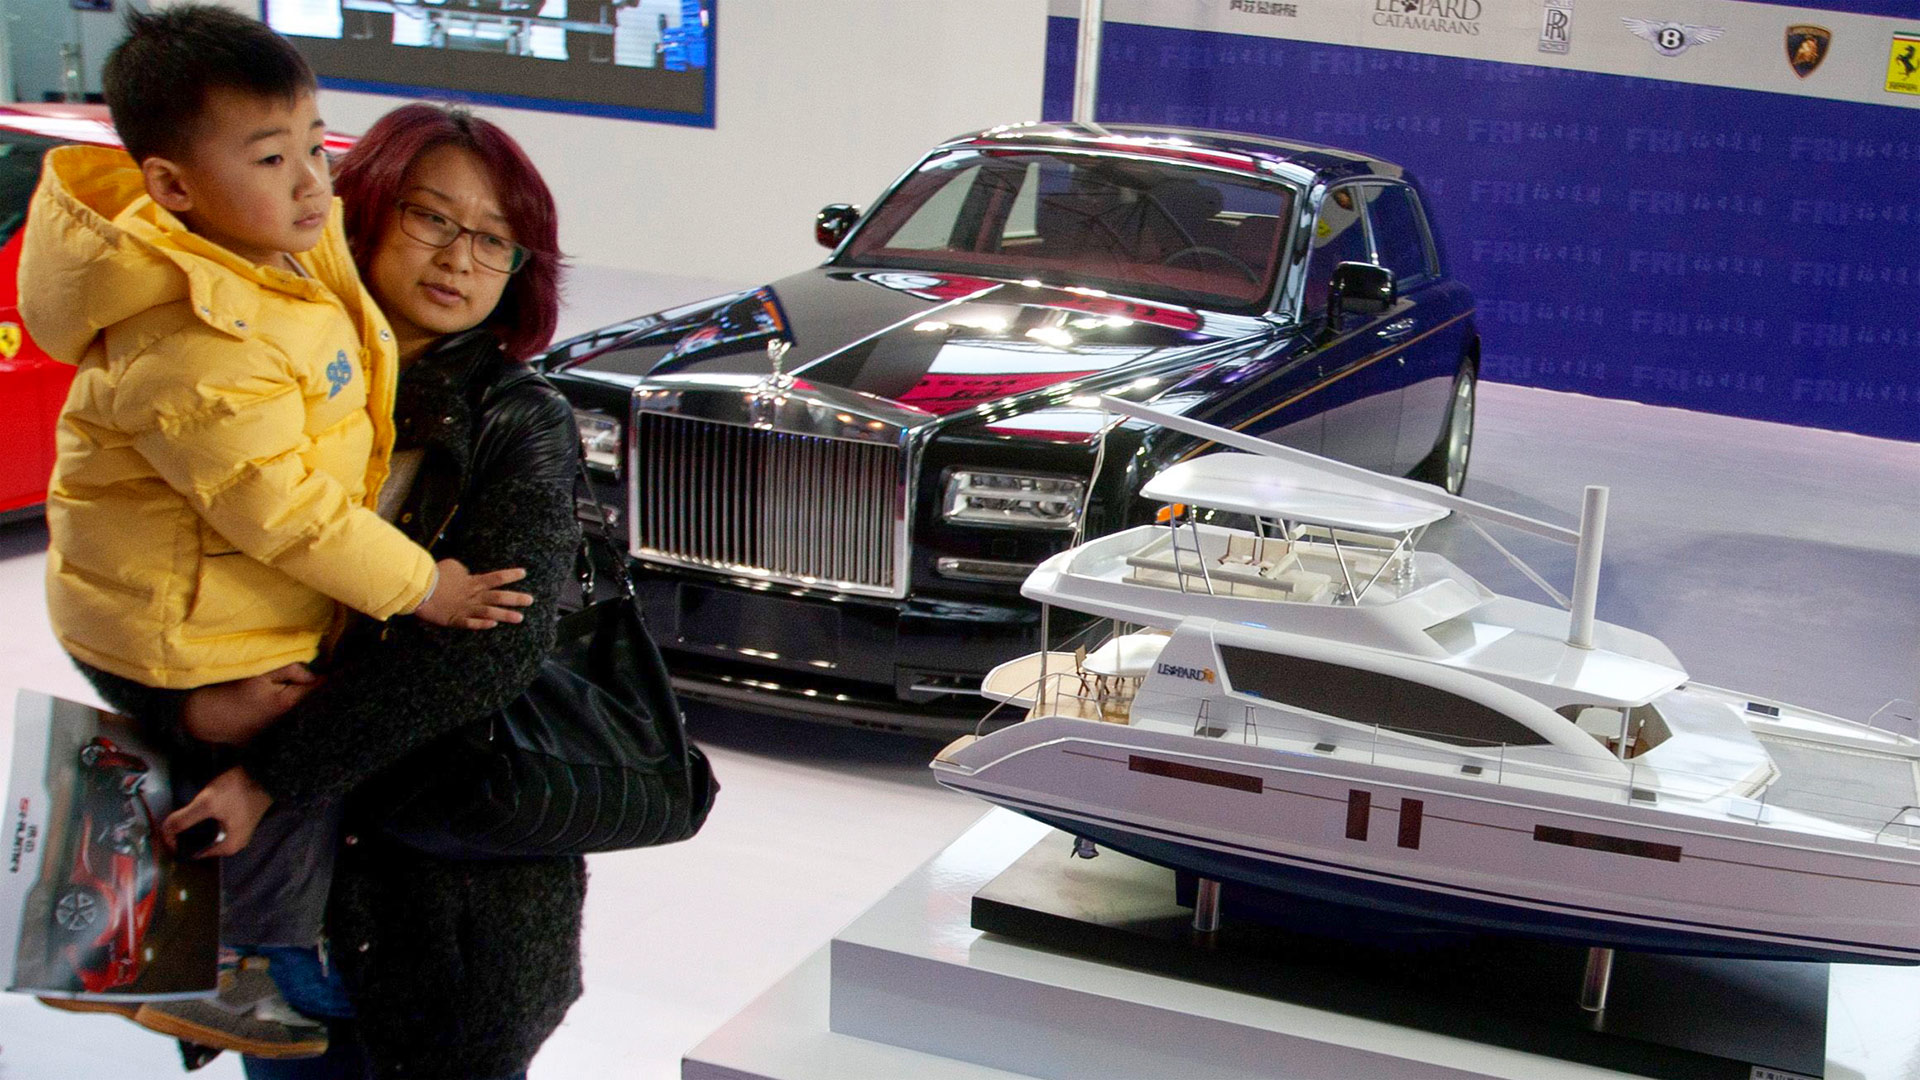 Chinesische Kundin mit Kind begutachtet einen Rolls Royce und das Modell einer Luxusjacht | picture alliance / dpa